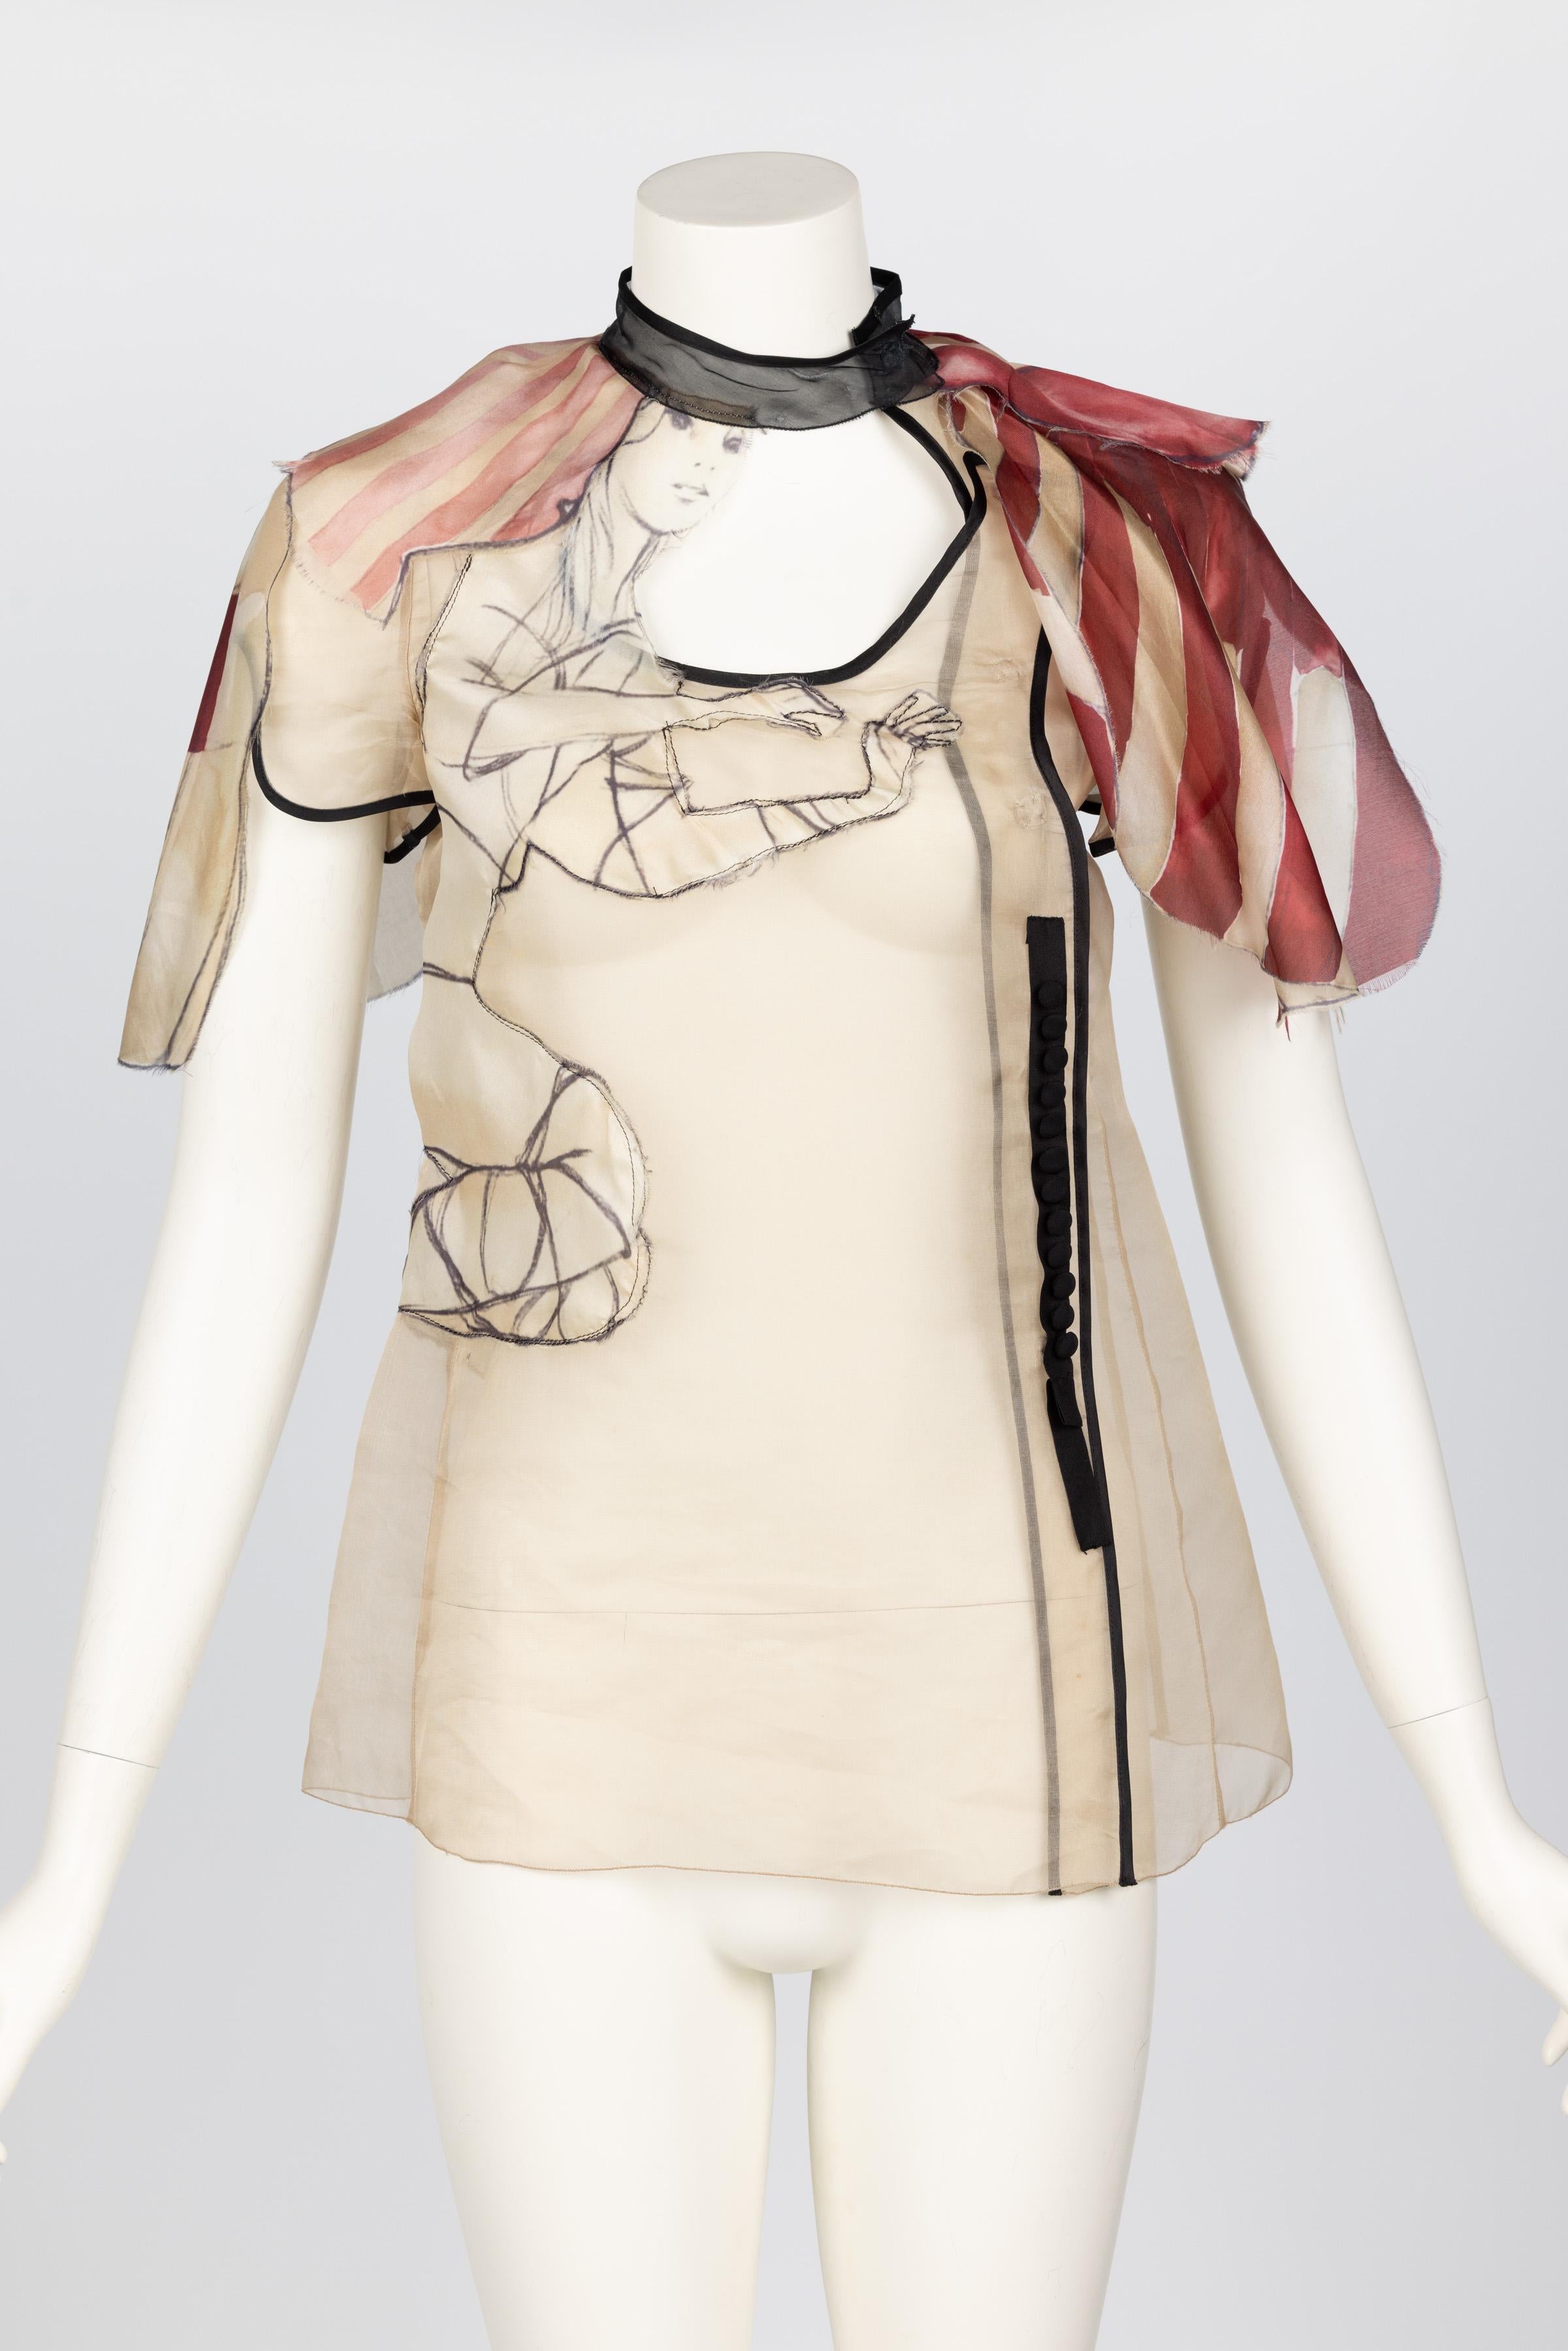 Le look du défilé de Prada #41 .
Réalisée dans un organza de soie beige, la blouse est transparente avec une bordure de ruban noir, un tour de cou, des fermetures à boutons en tissu et des manches capuchon.

Quelques coulures et transferts de